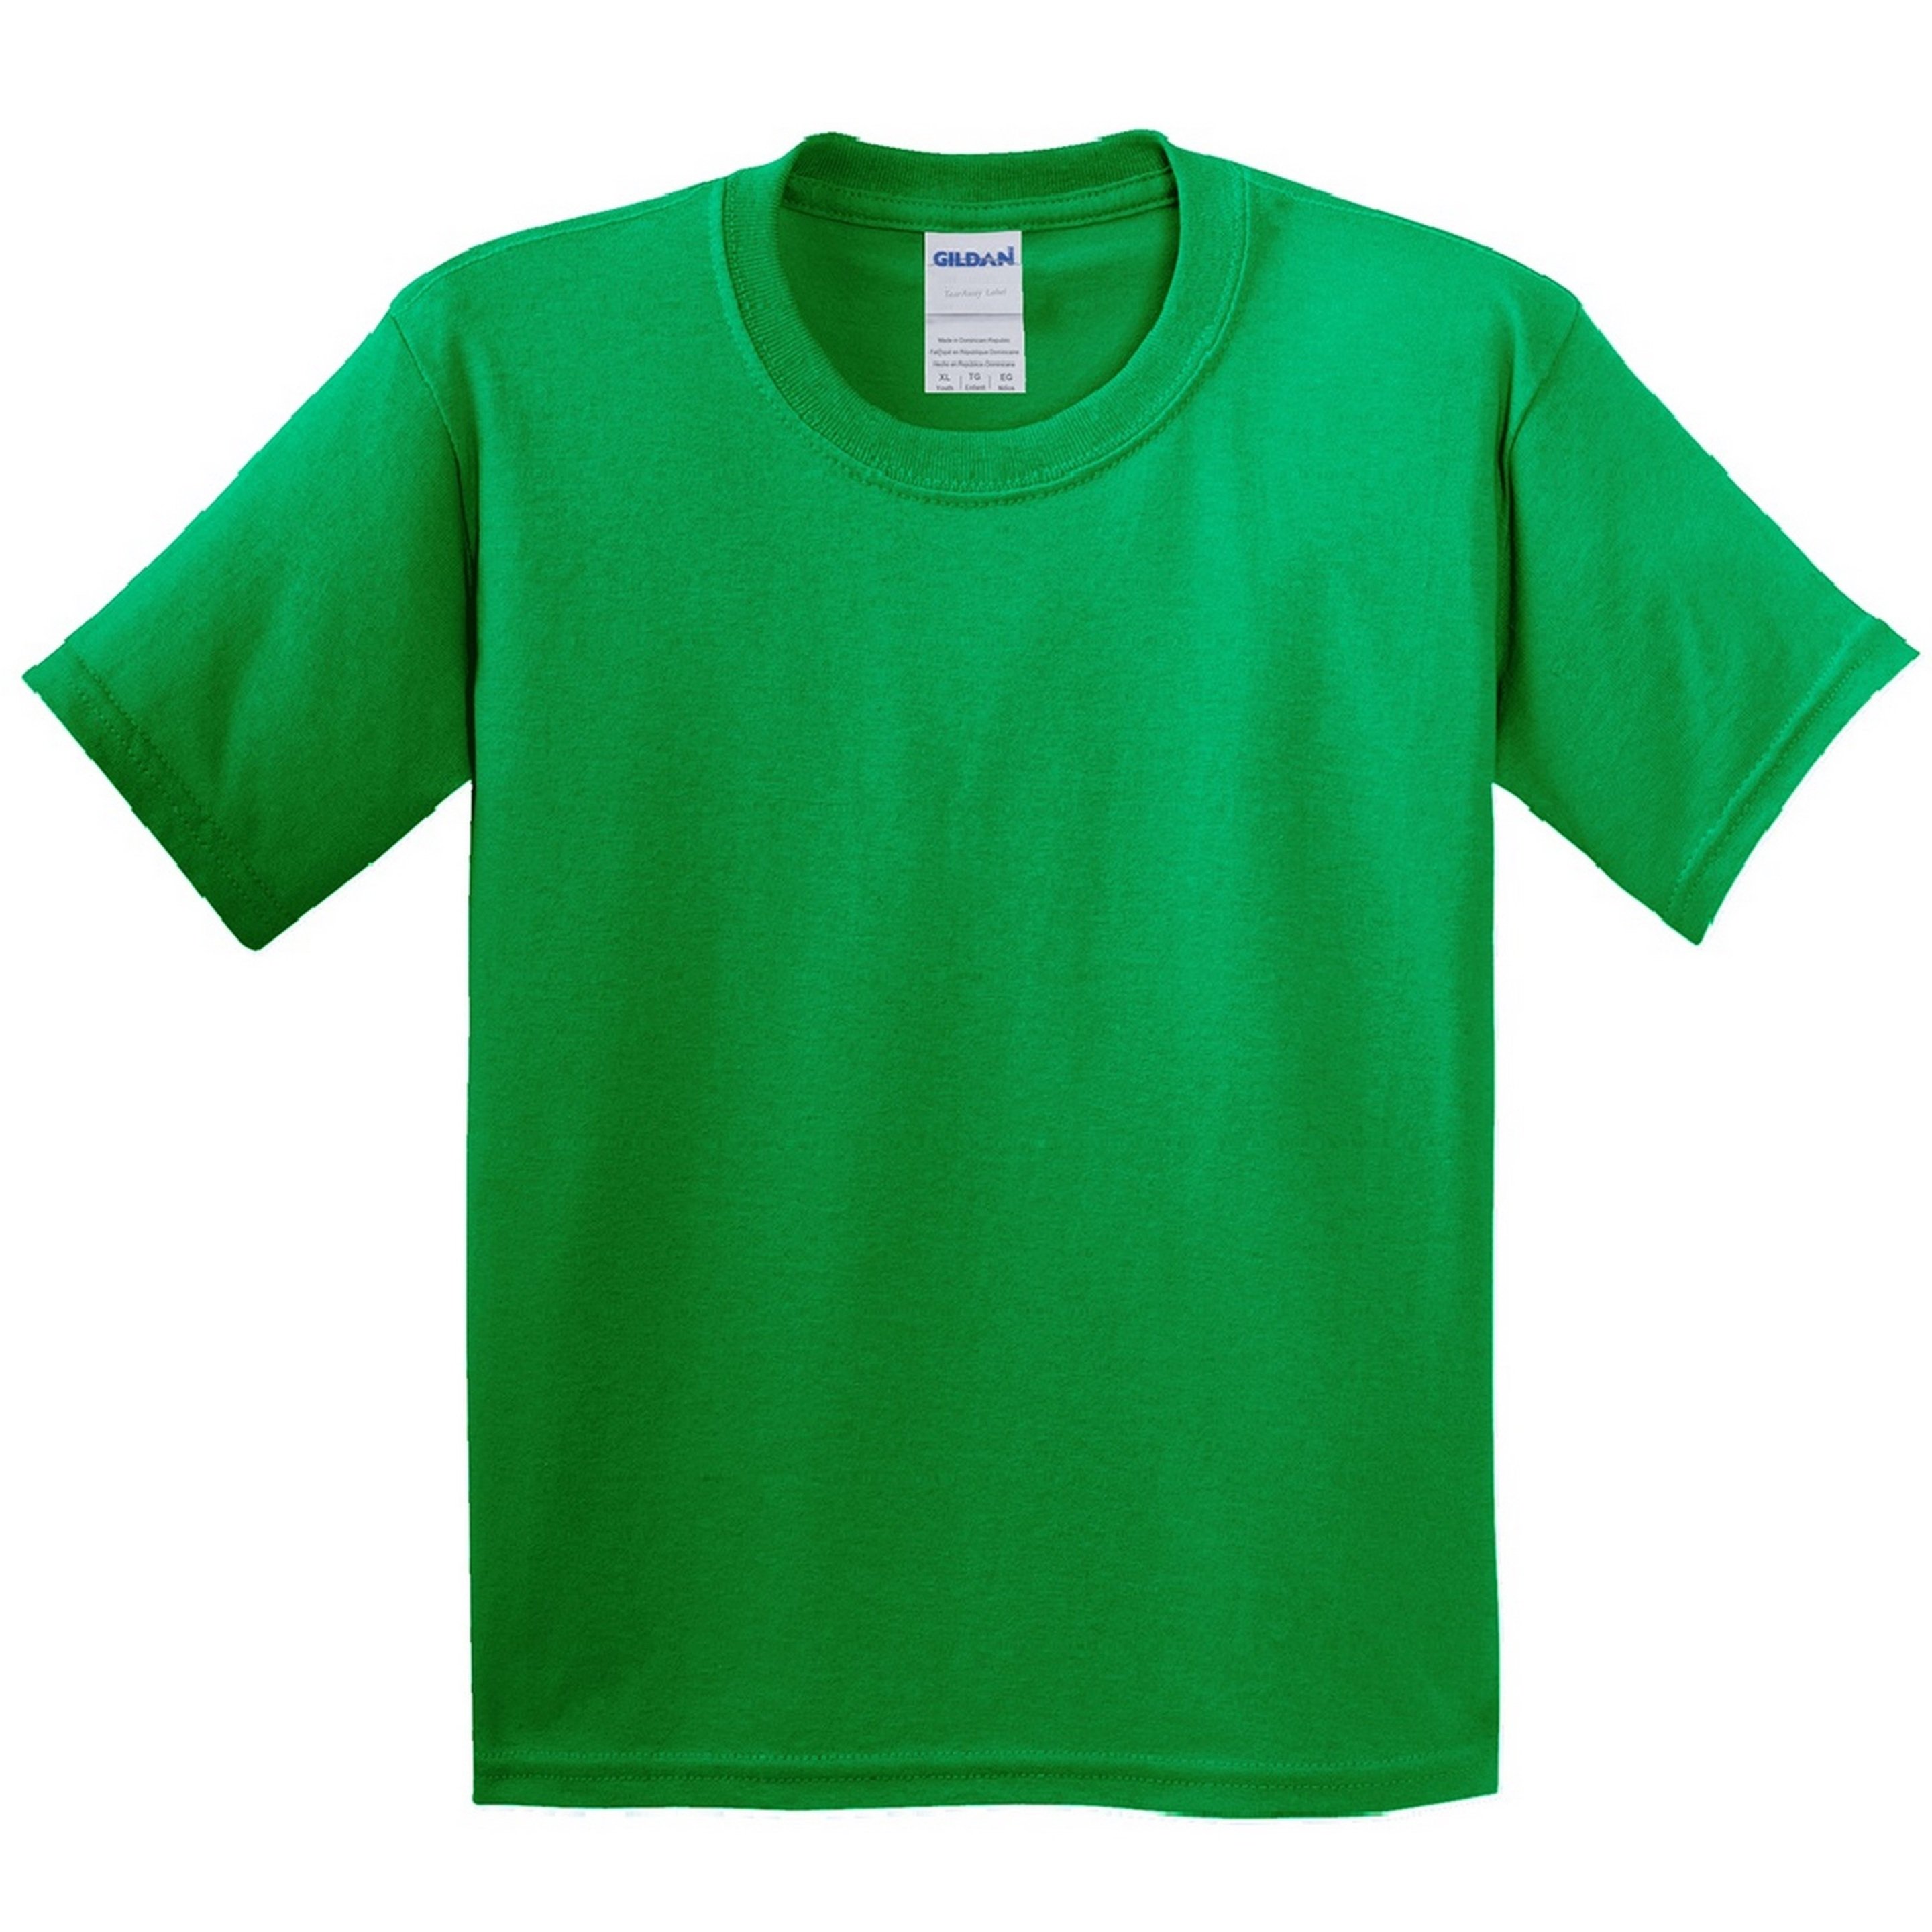 T-shirt Gildan - verde-manzana - 